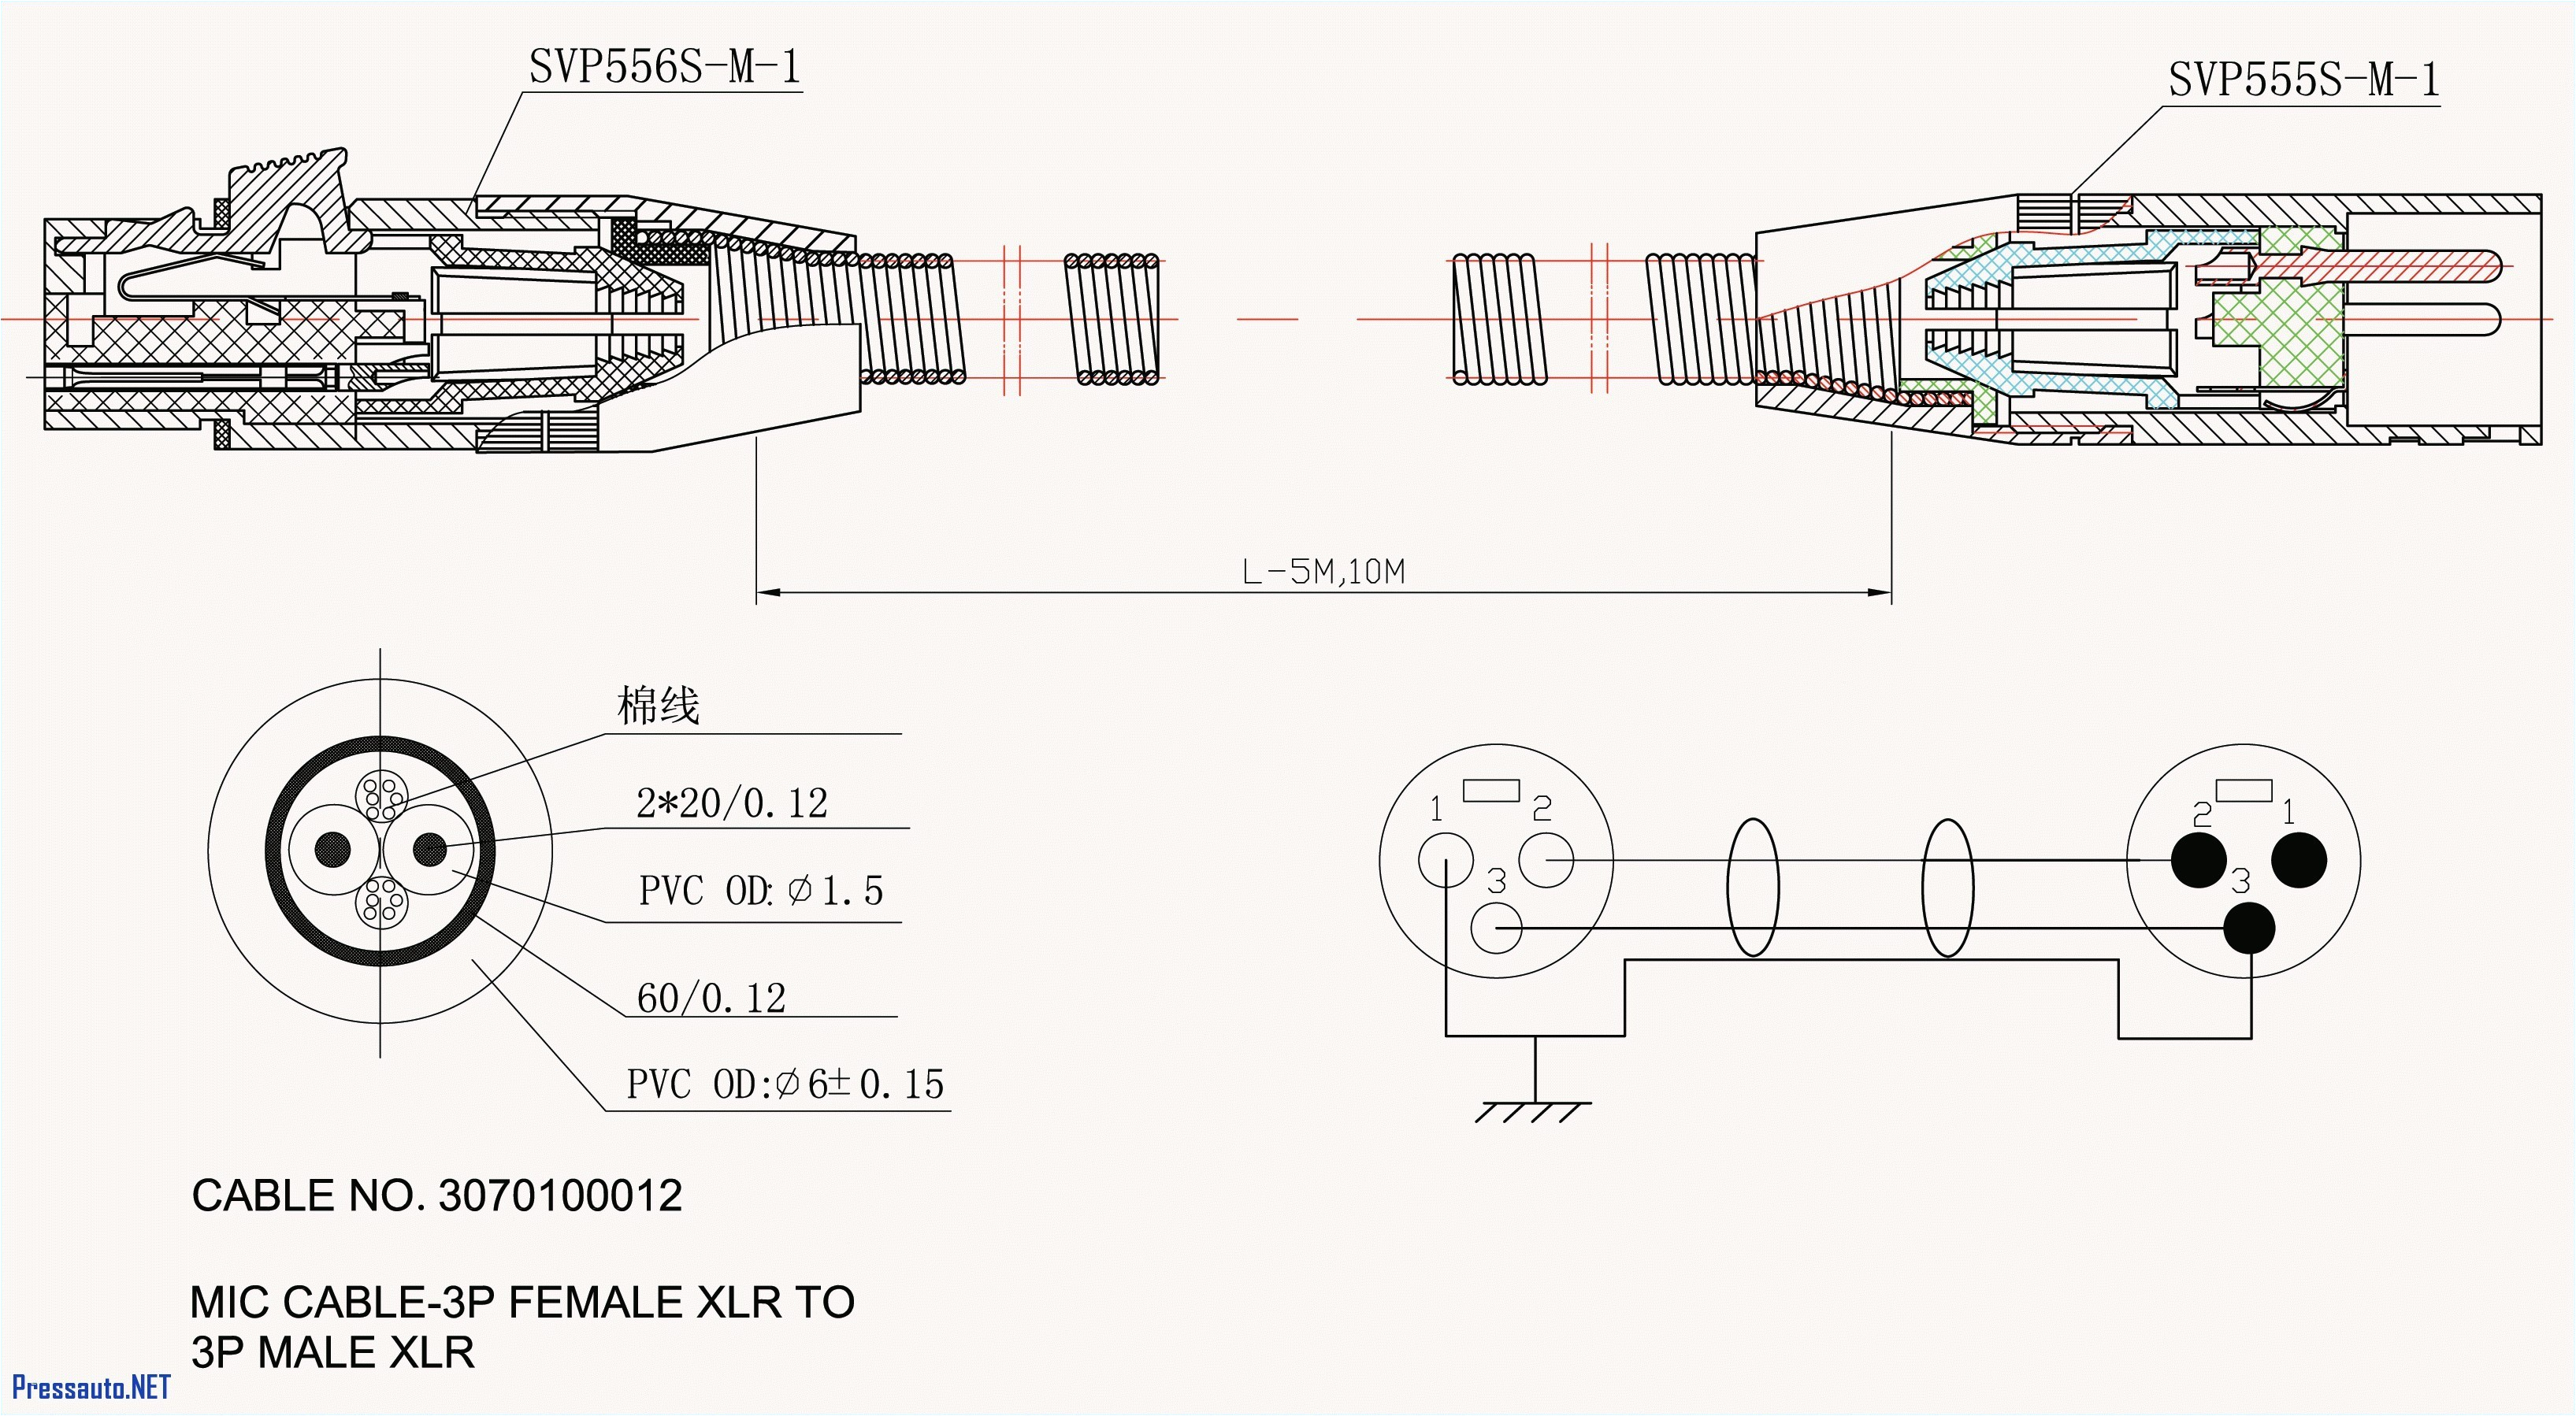 2001 ford ranger wiring diagram pdf inspirational wiring diagram image 1989 ford ranger wiring diagram 2001